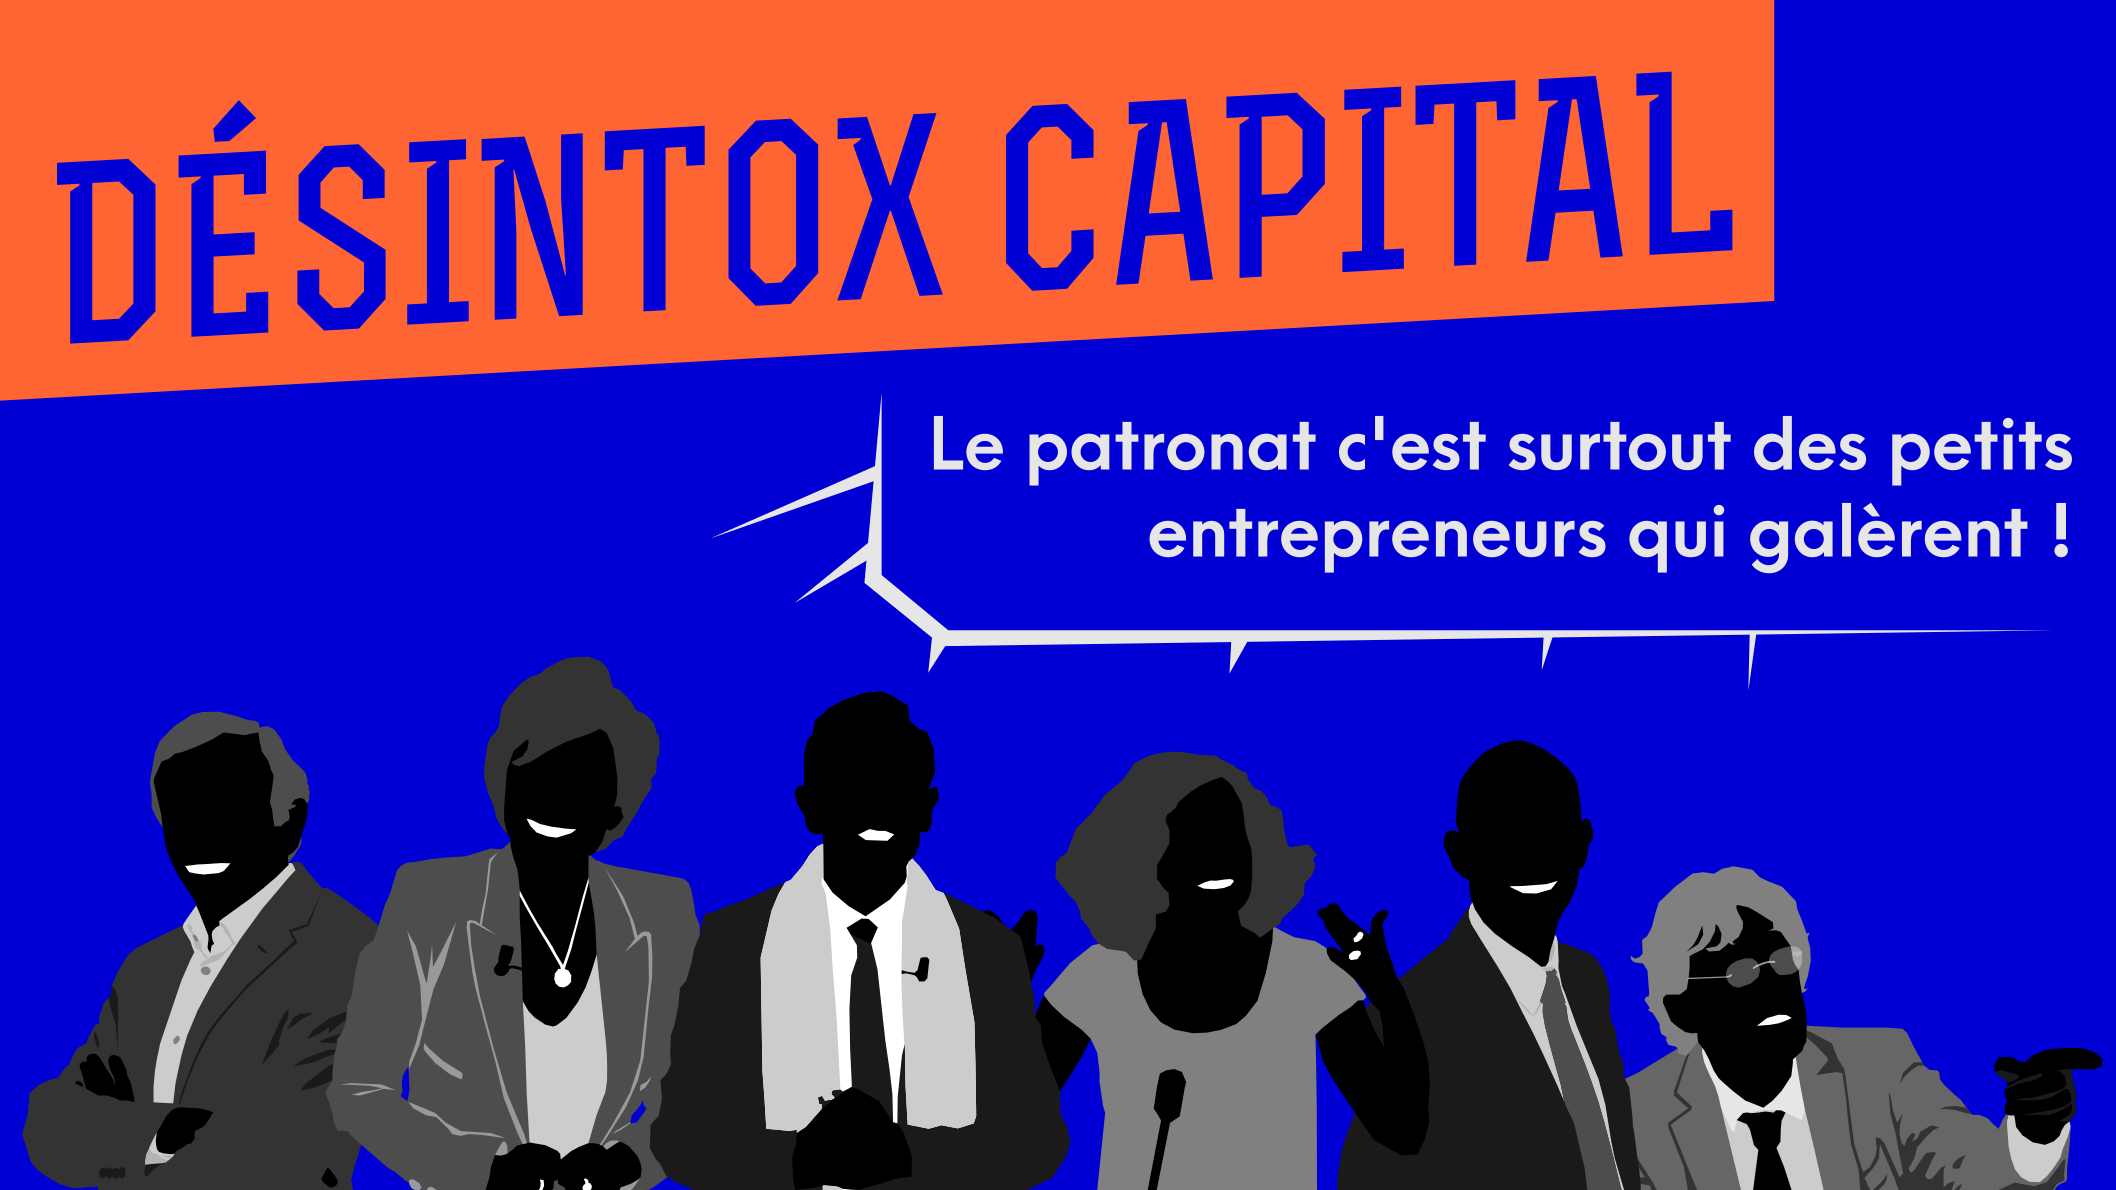 Non, le patronat en France n’est pas composé majoritairement de petits entrepreneurs qui galèrent